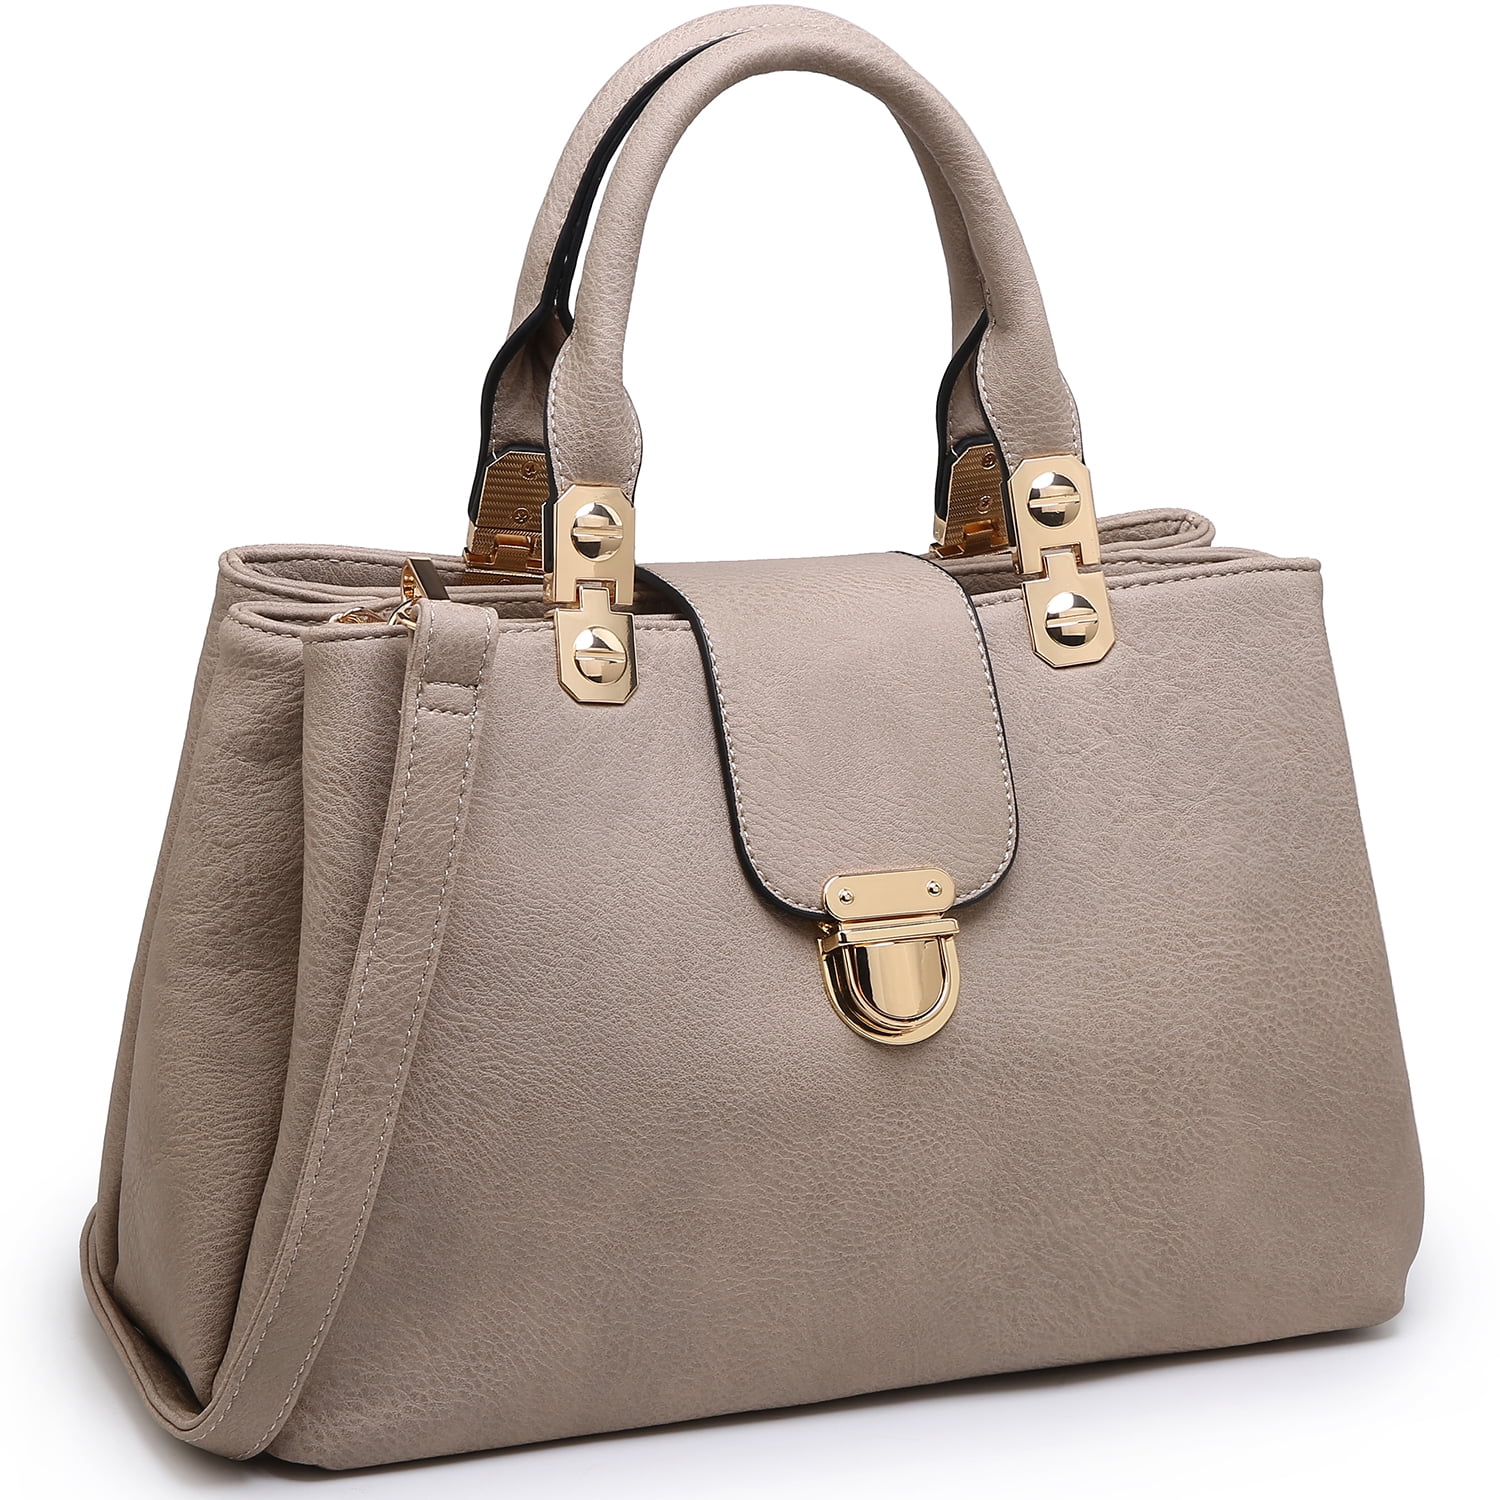 Dasein Women Satchel Handbags Top Handle Purse Medium Tote Bag